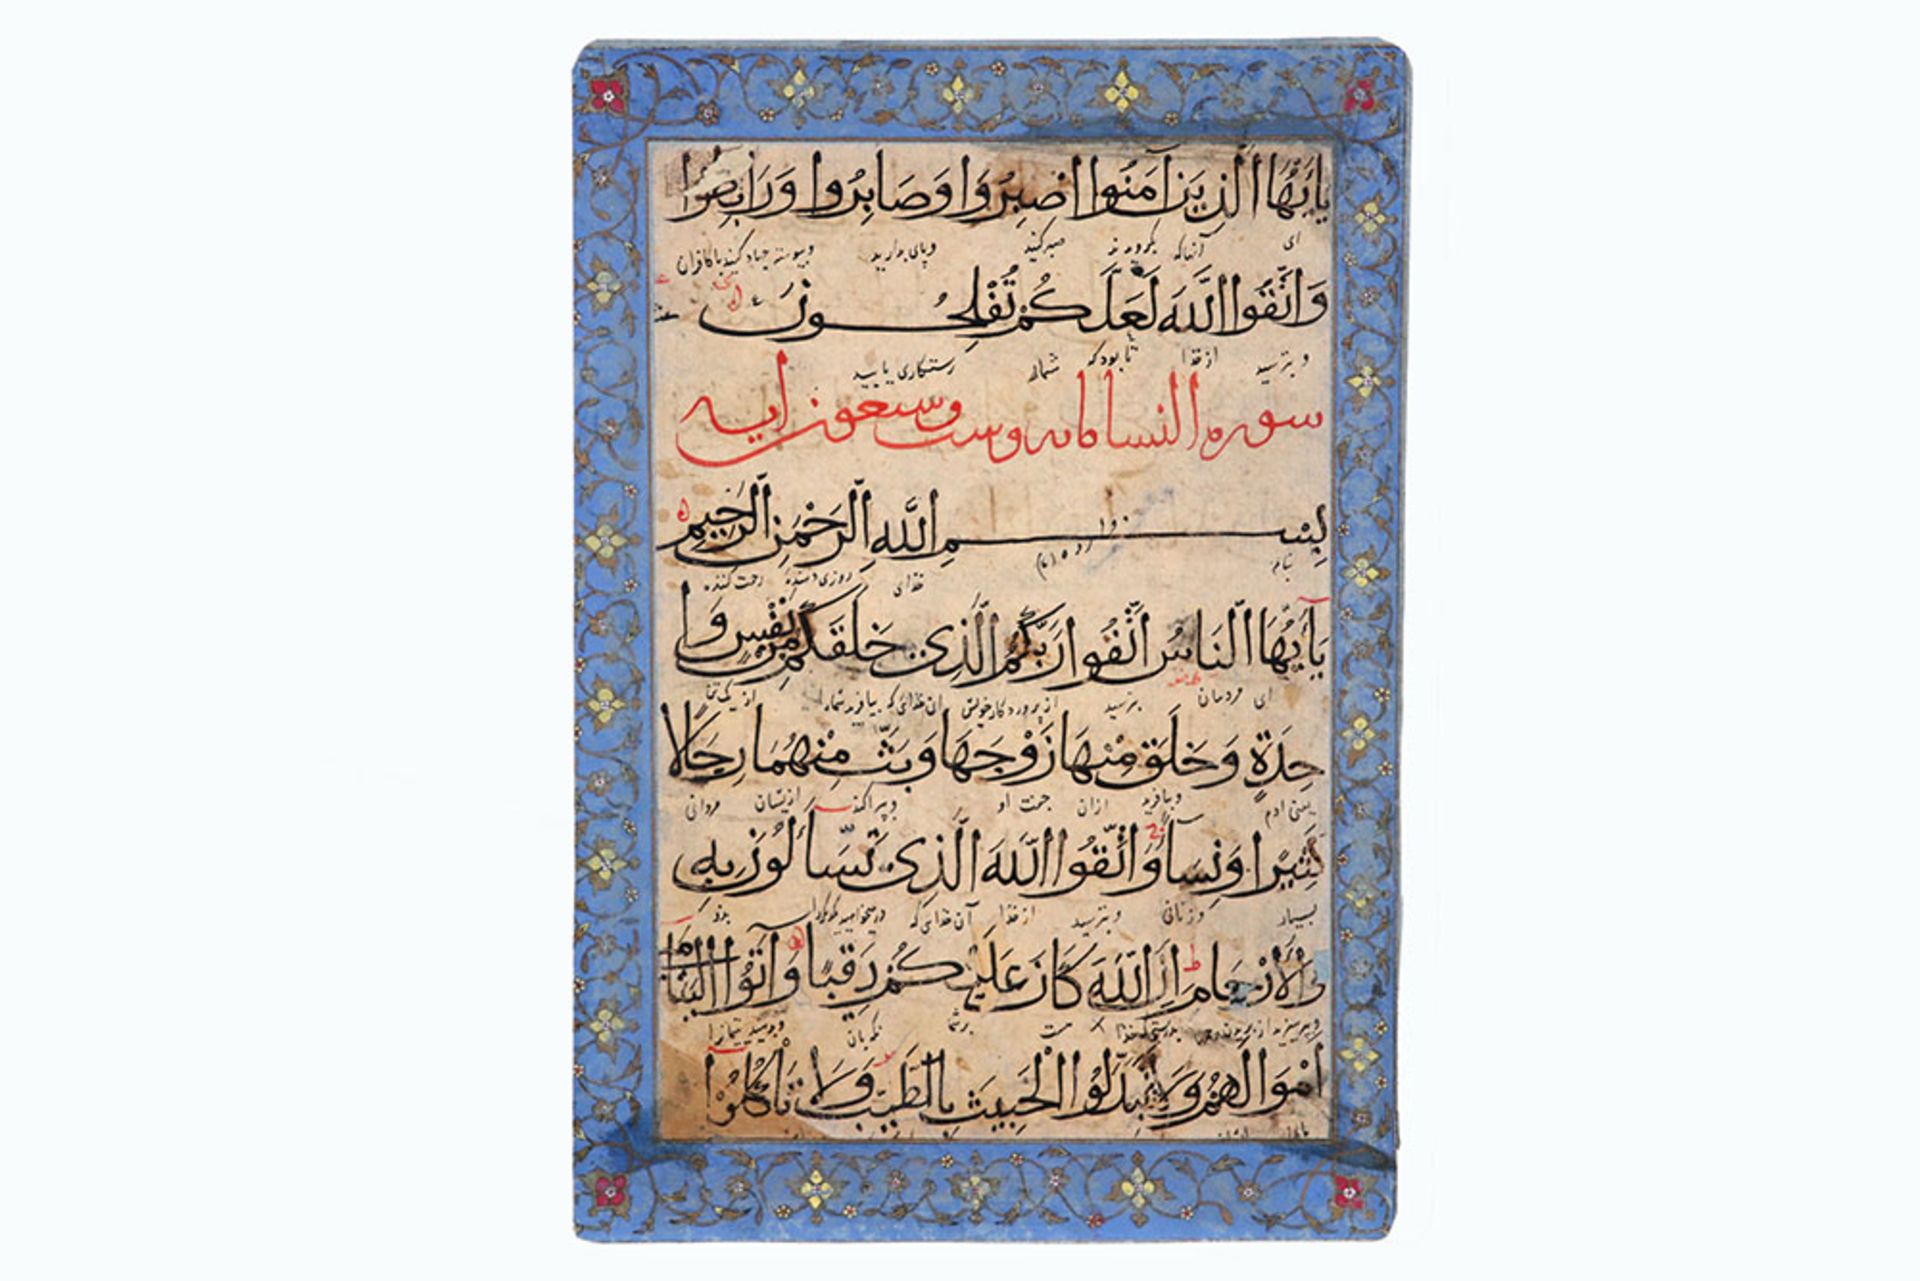 15th/16th Cent. Persian Arabic manuscript on paper, written in Muhaqqaq script, verses from Sura